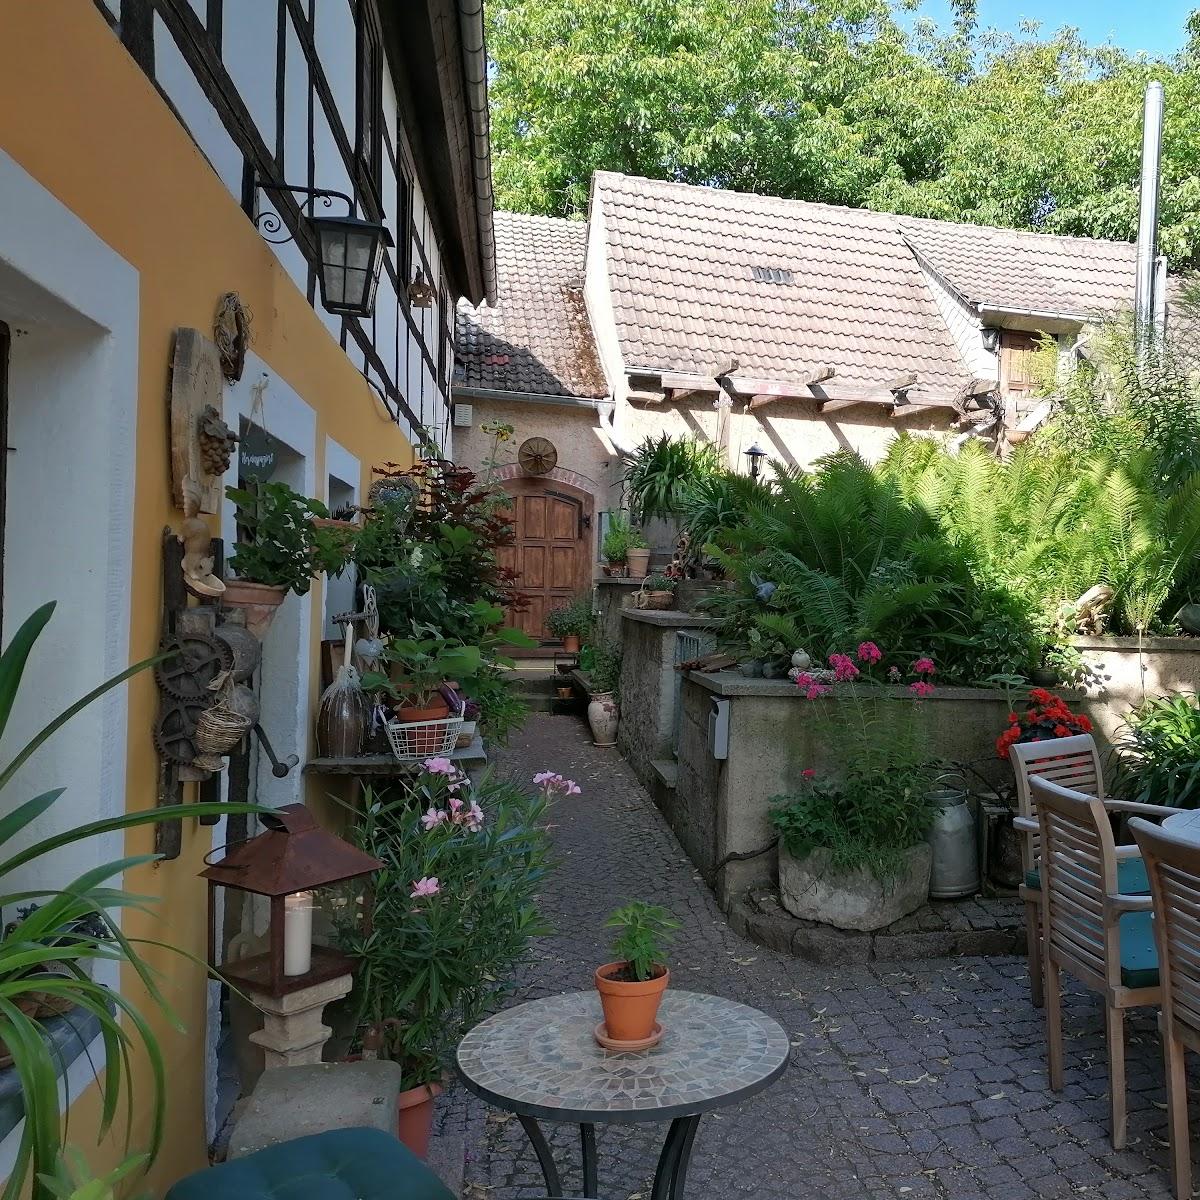 Restaurant "Weinstube Bauernhäusl" in Meißen